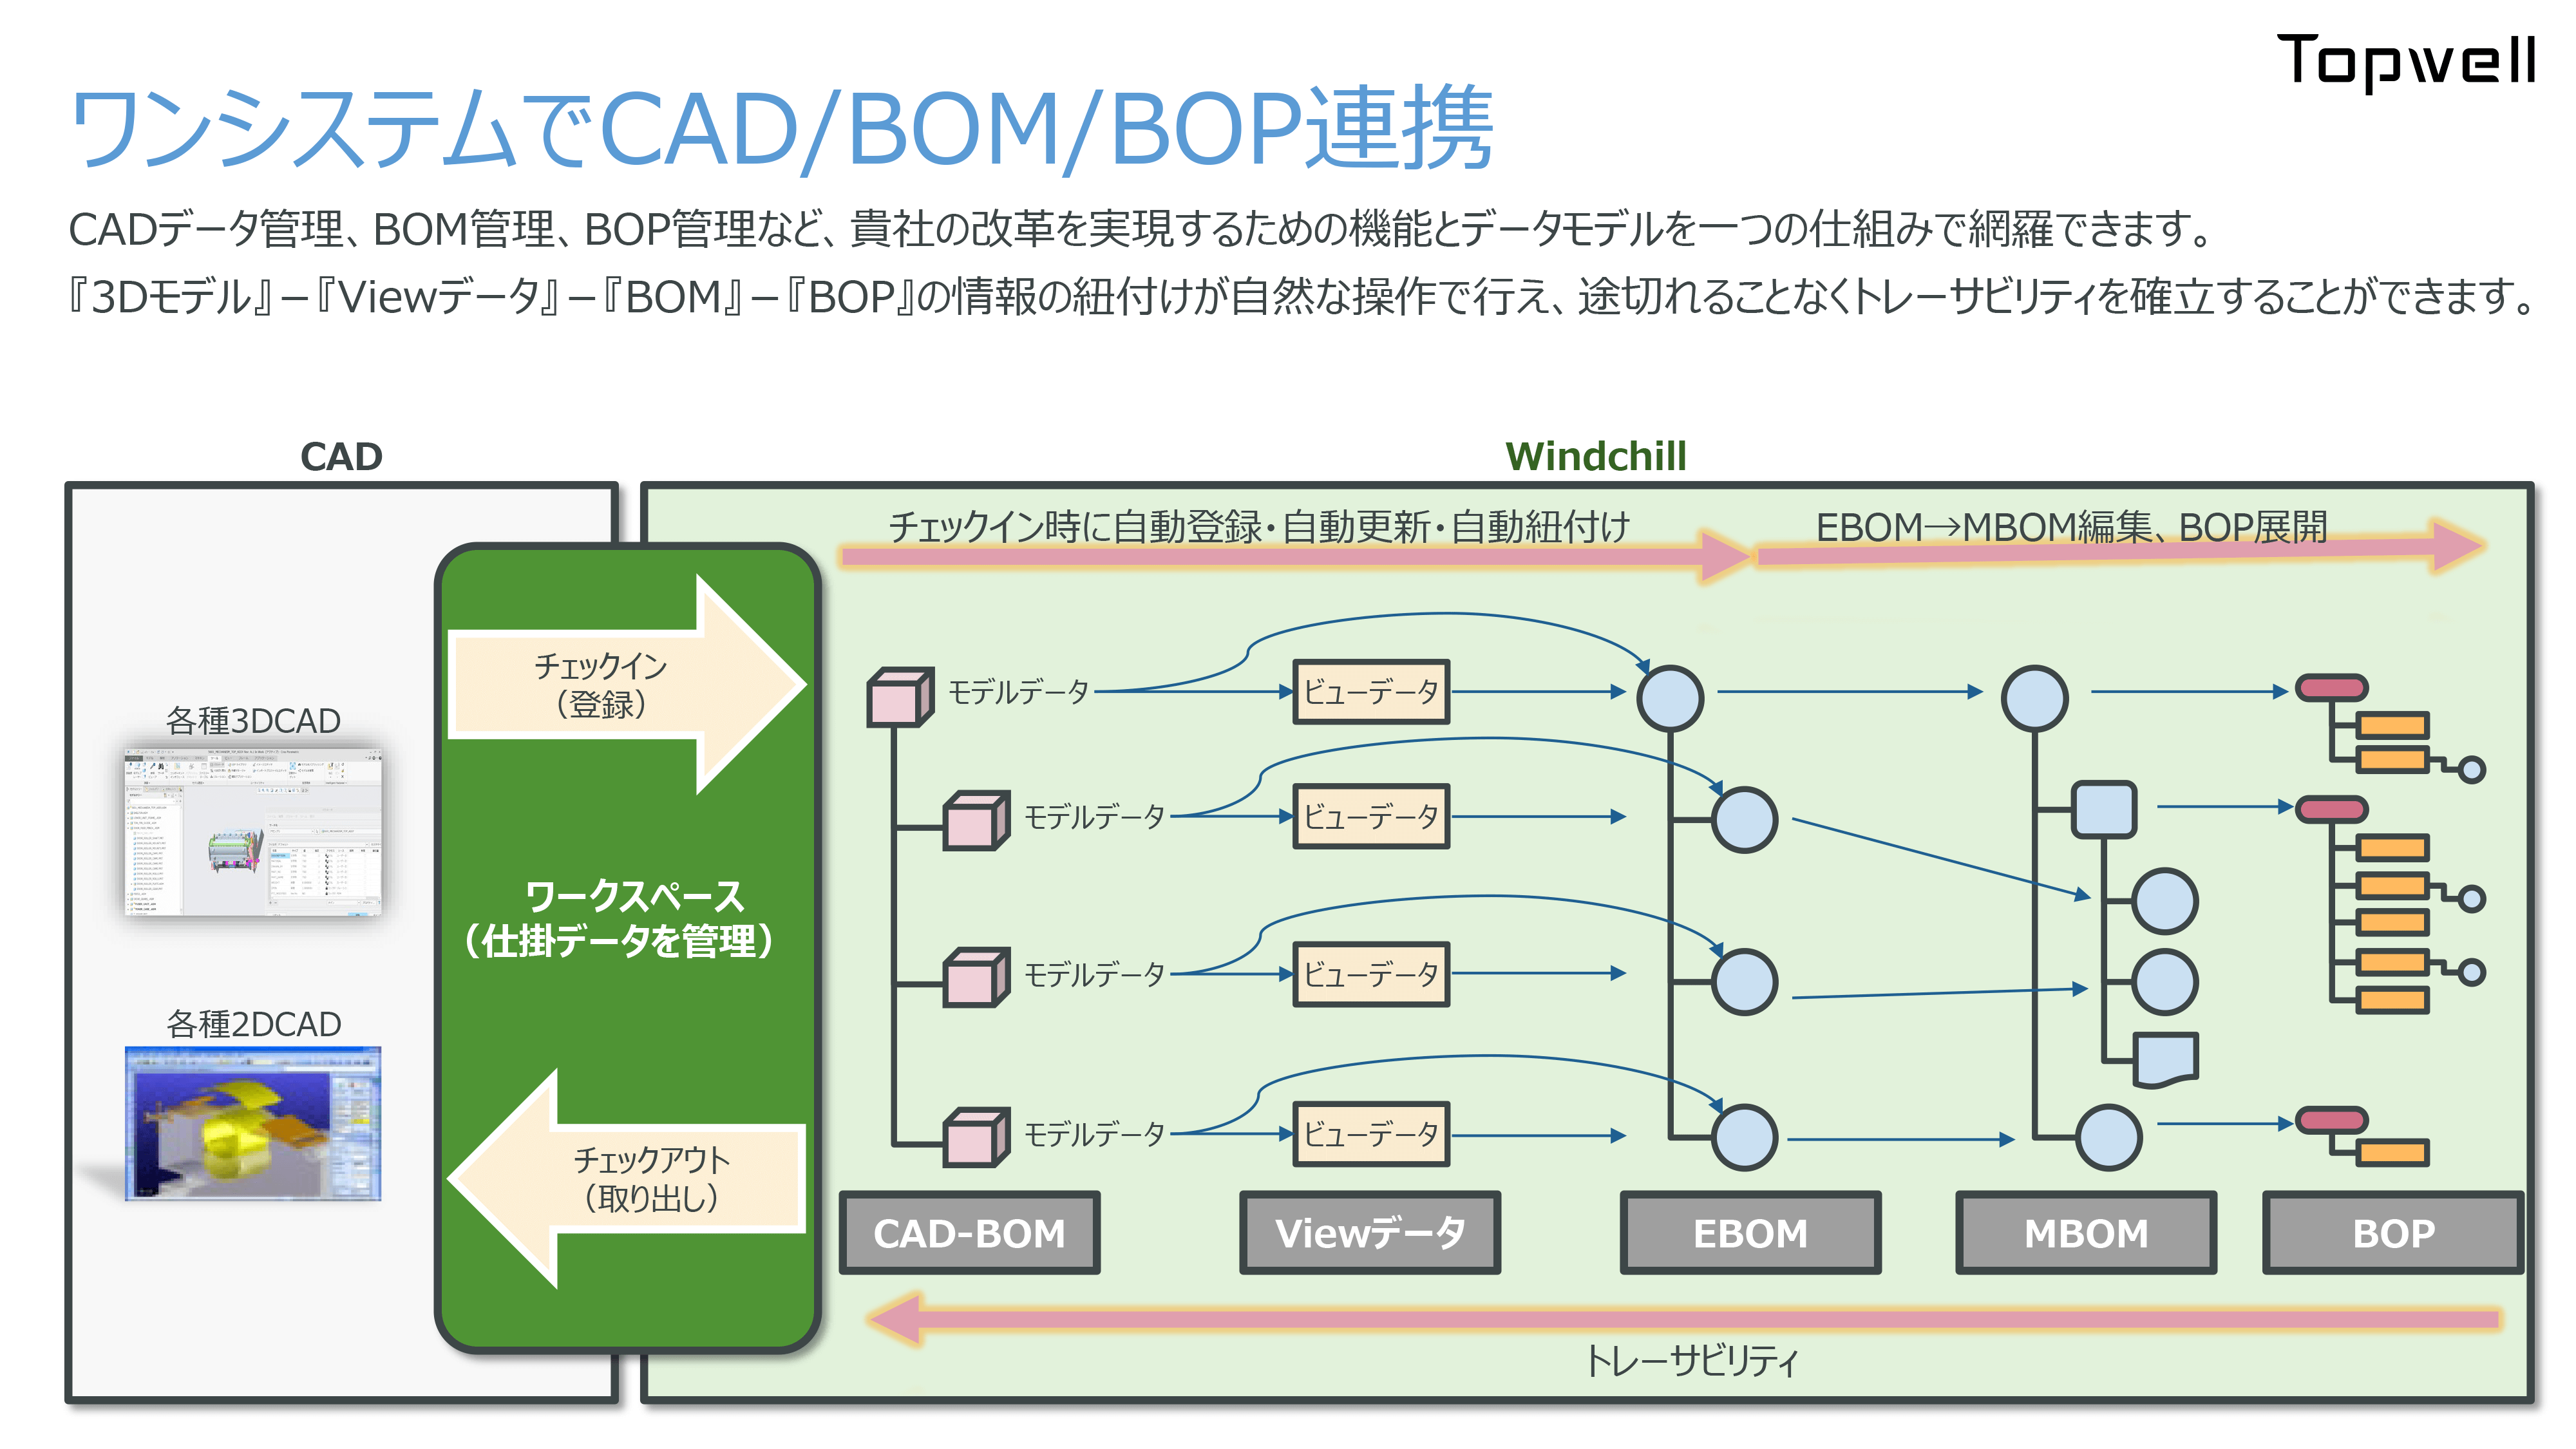 ワンシステムでCAD/BOM/BOP連携